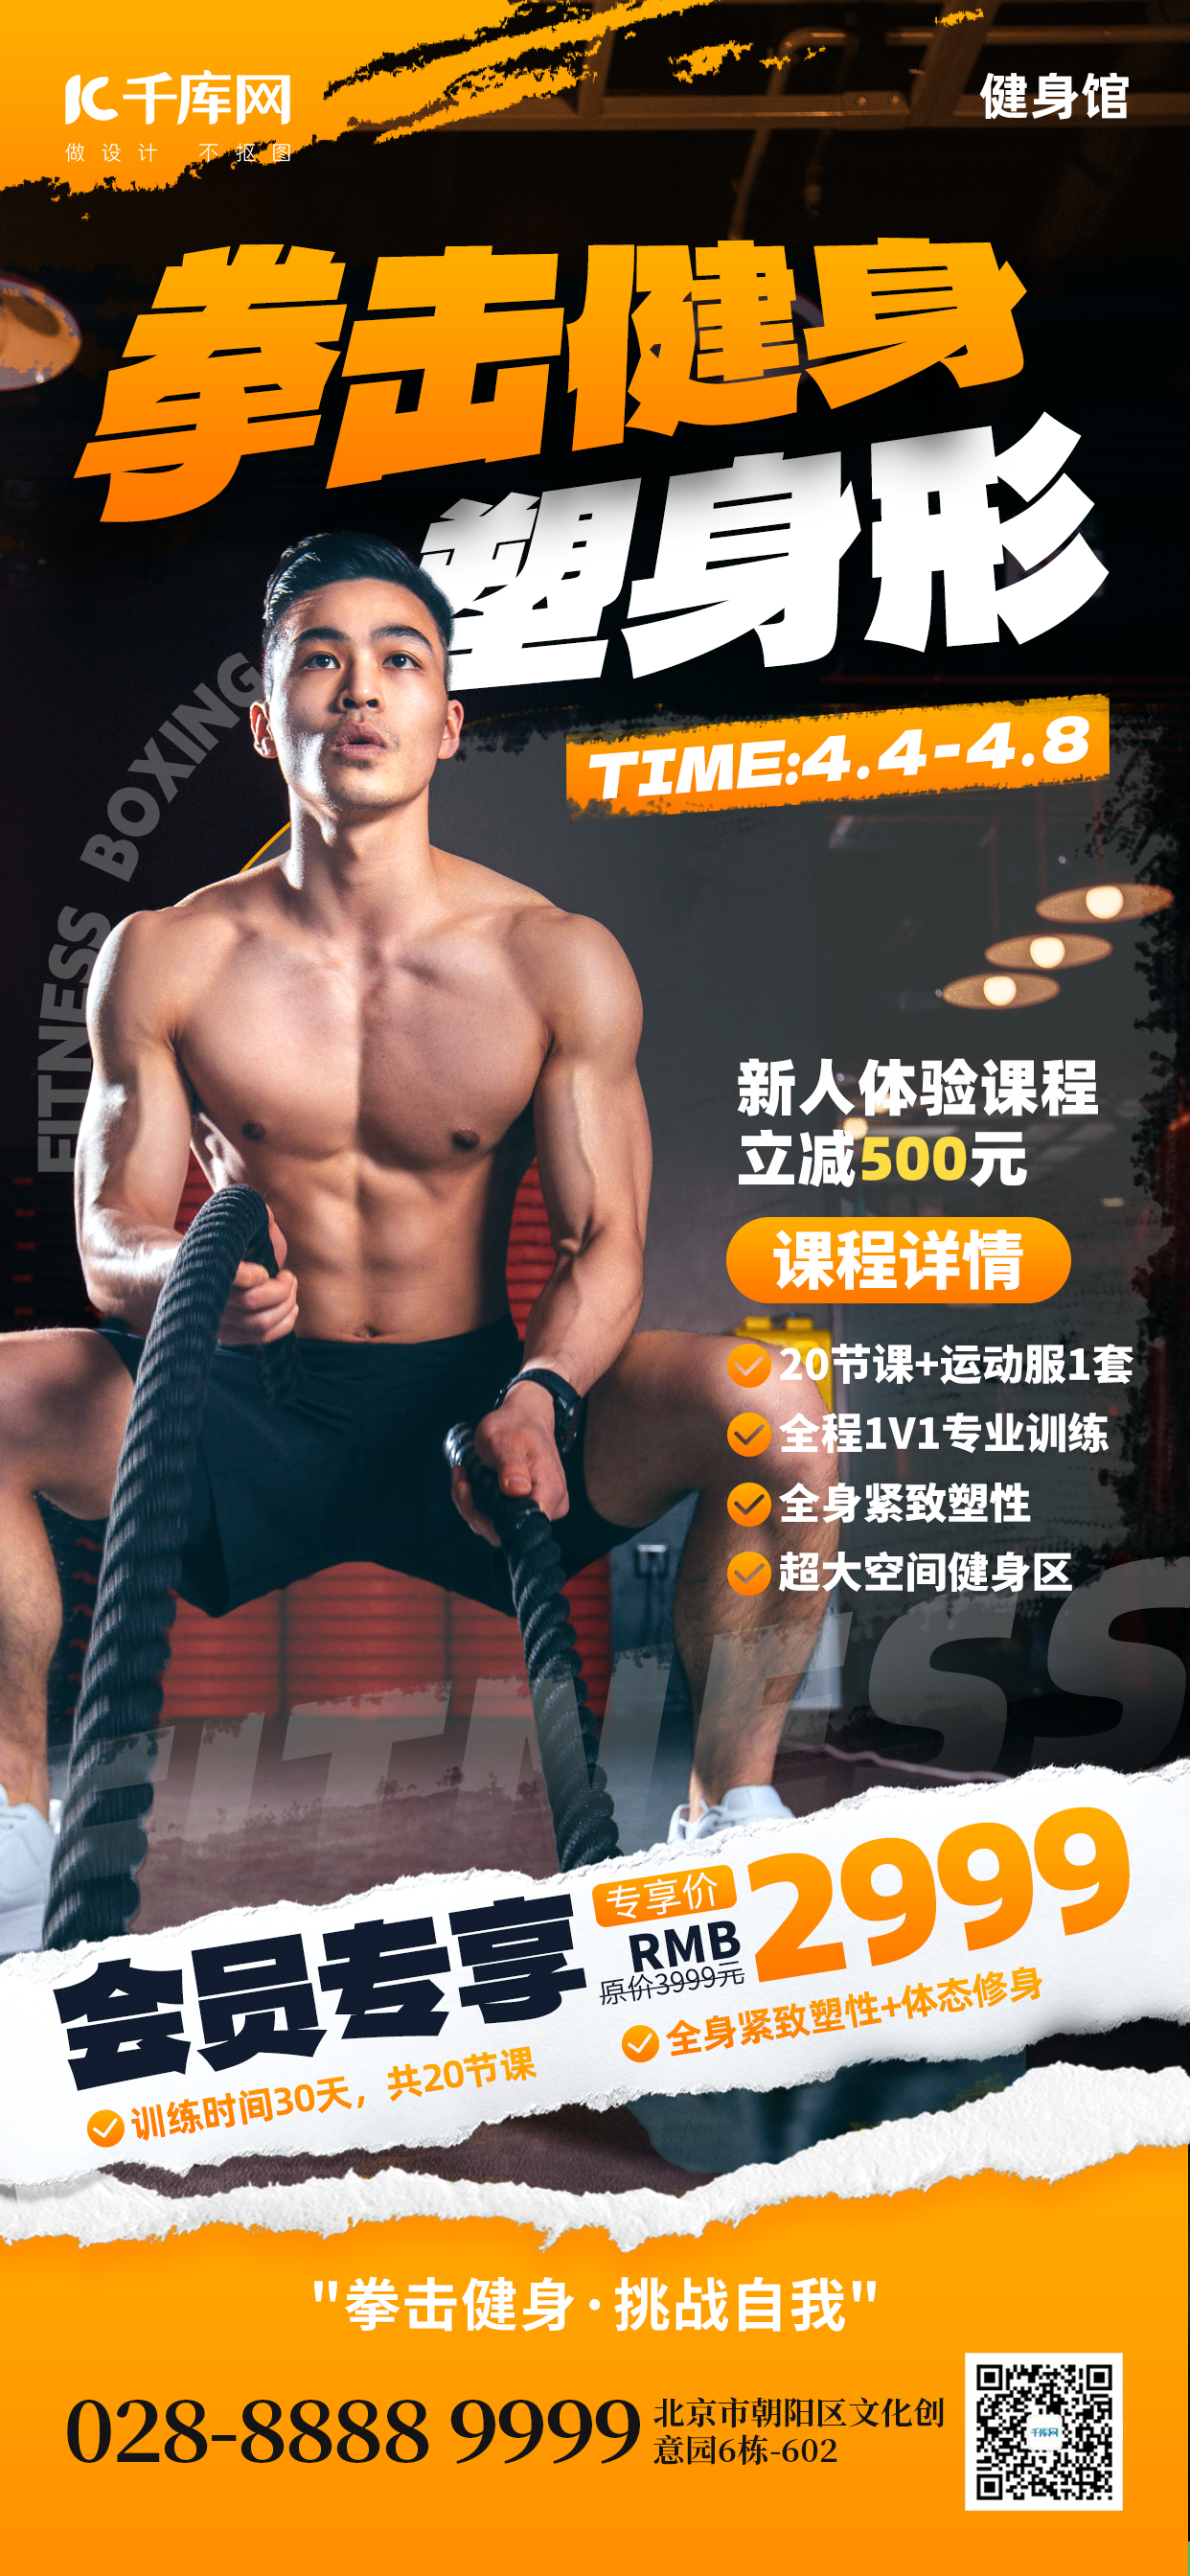 拳击健身塑身形健身达人橙黄色创意手机海报ps海报制作图片